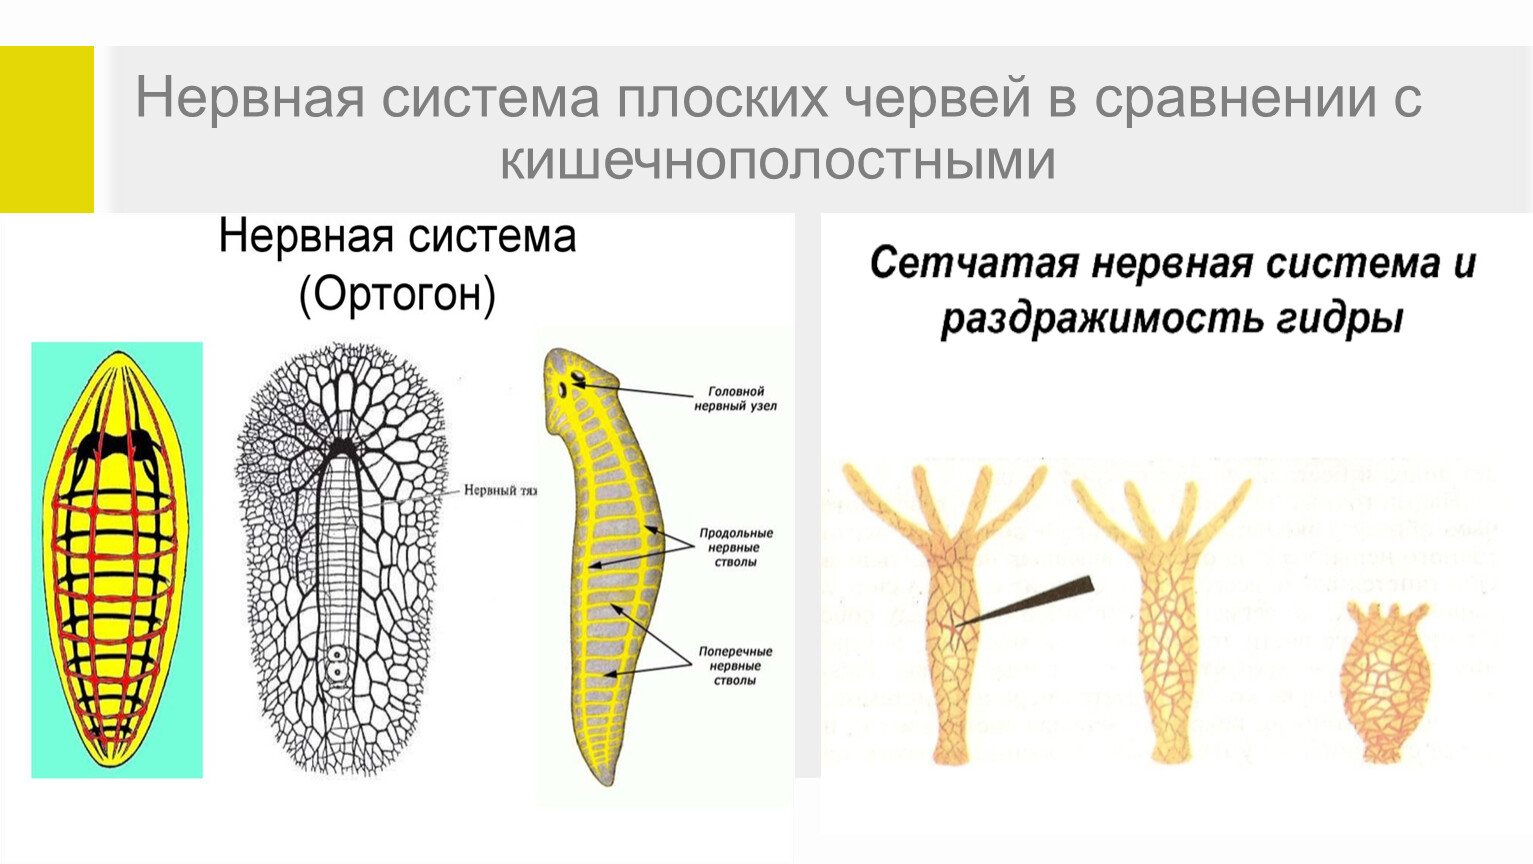 Нервная система лестничного типа. Нервная система лестничного типа у каких червей. Нервная система плоских червей какого типа. Система лестничного типа у каких червей.